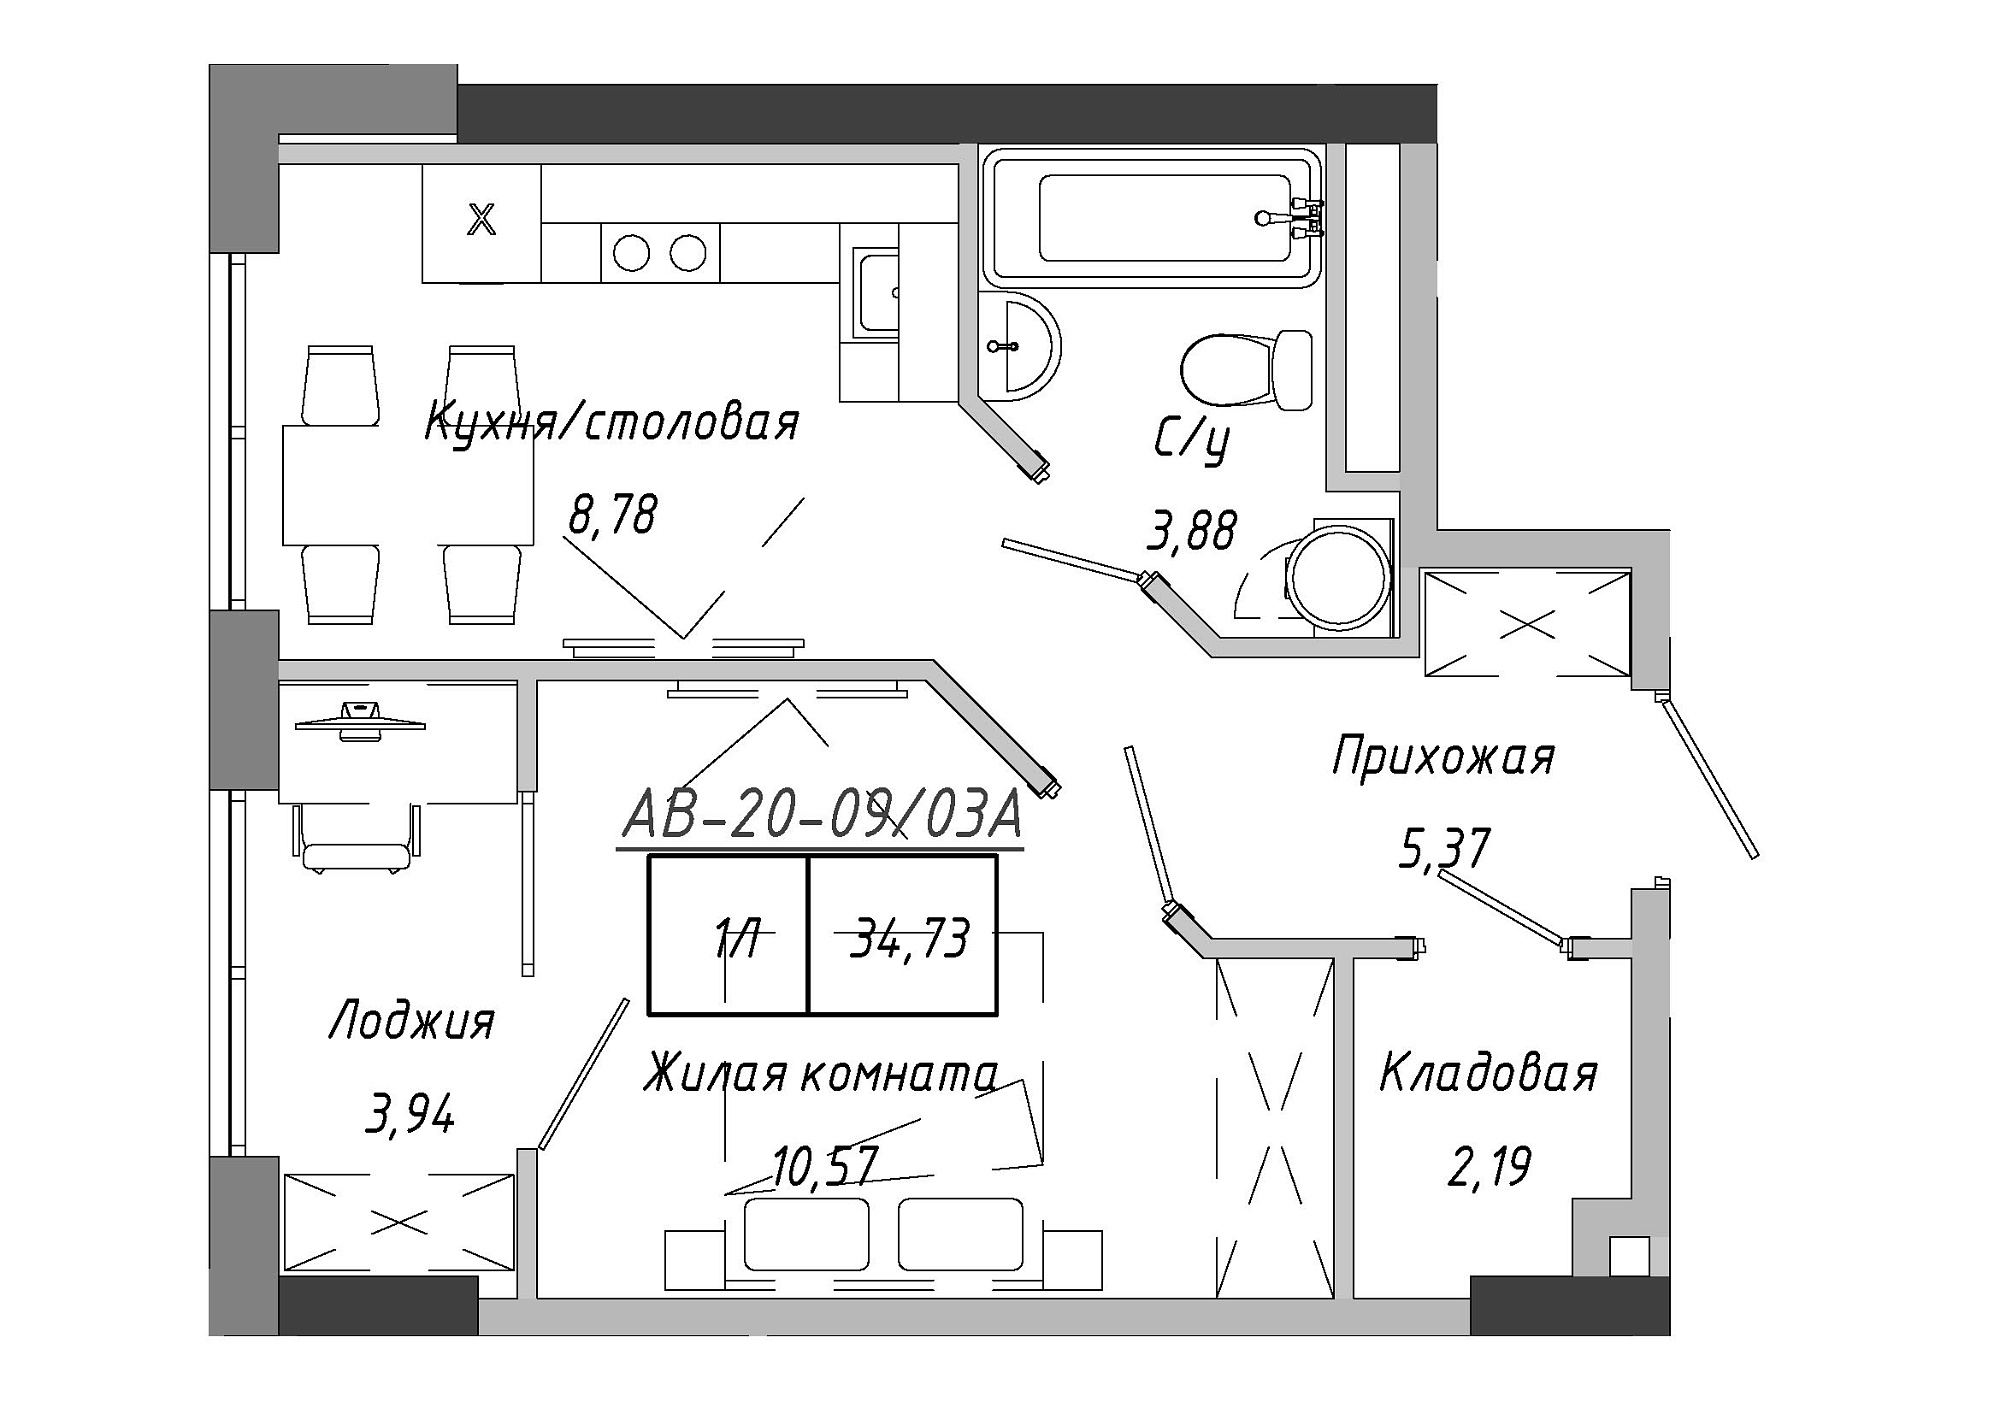 Планировка 1-к квартира площей 35.26м2, AB-20-09/0003а.